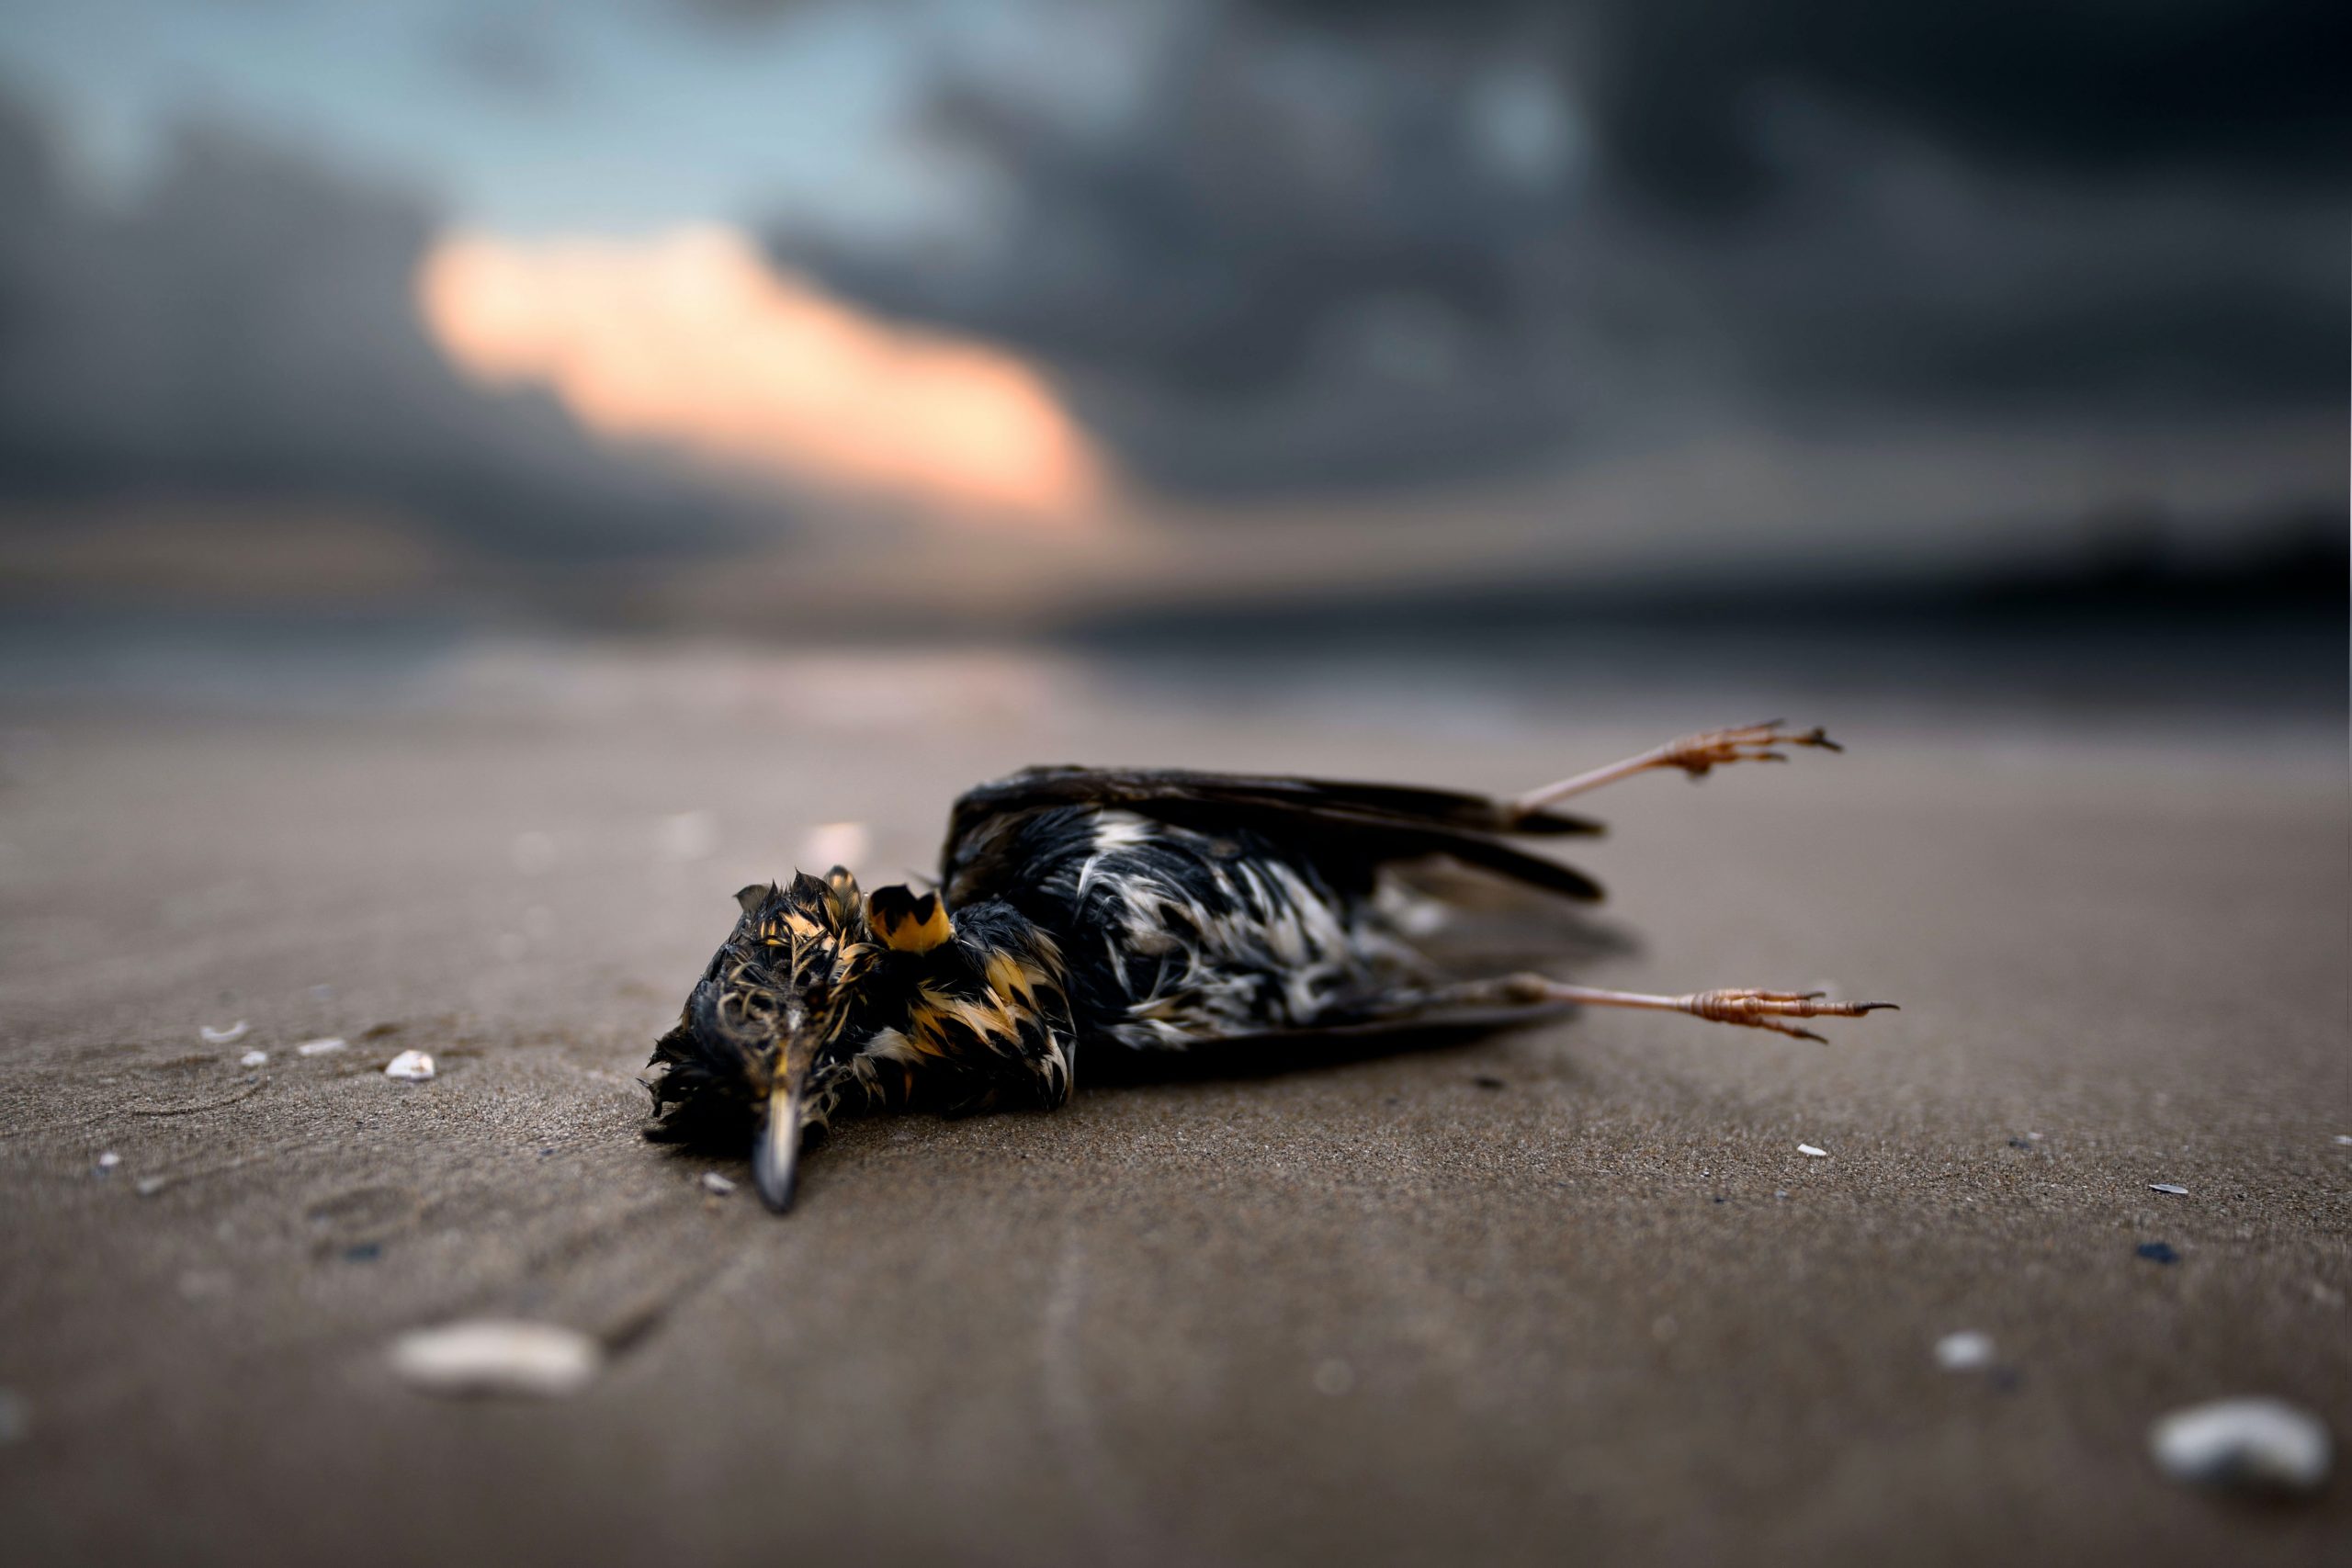 Toter Vogel am Strand